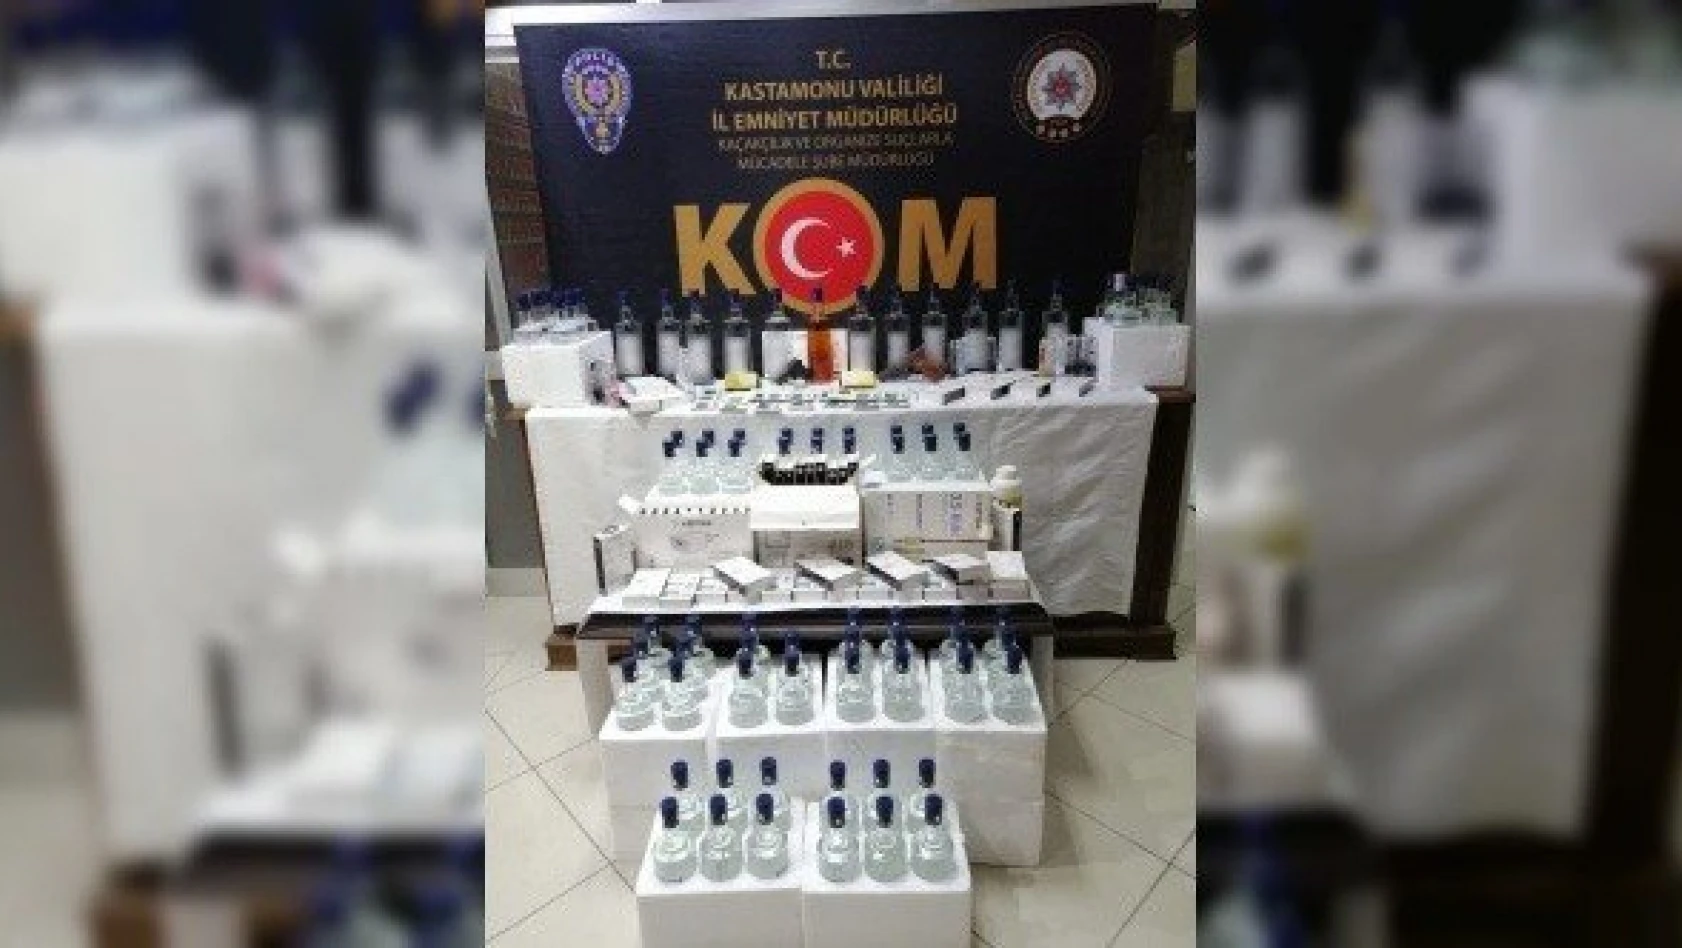 Kastamonu'da içki ve silah kaçakçılığı operasyonu: 3 gözaltı